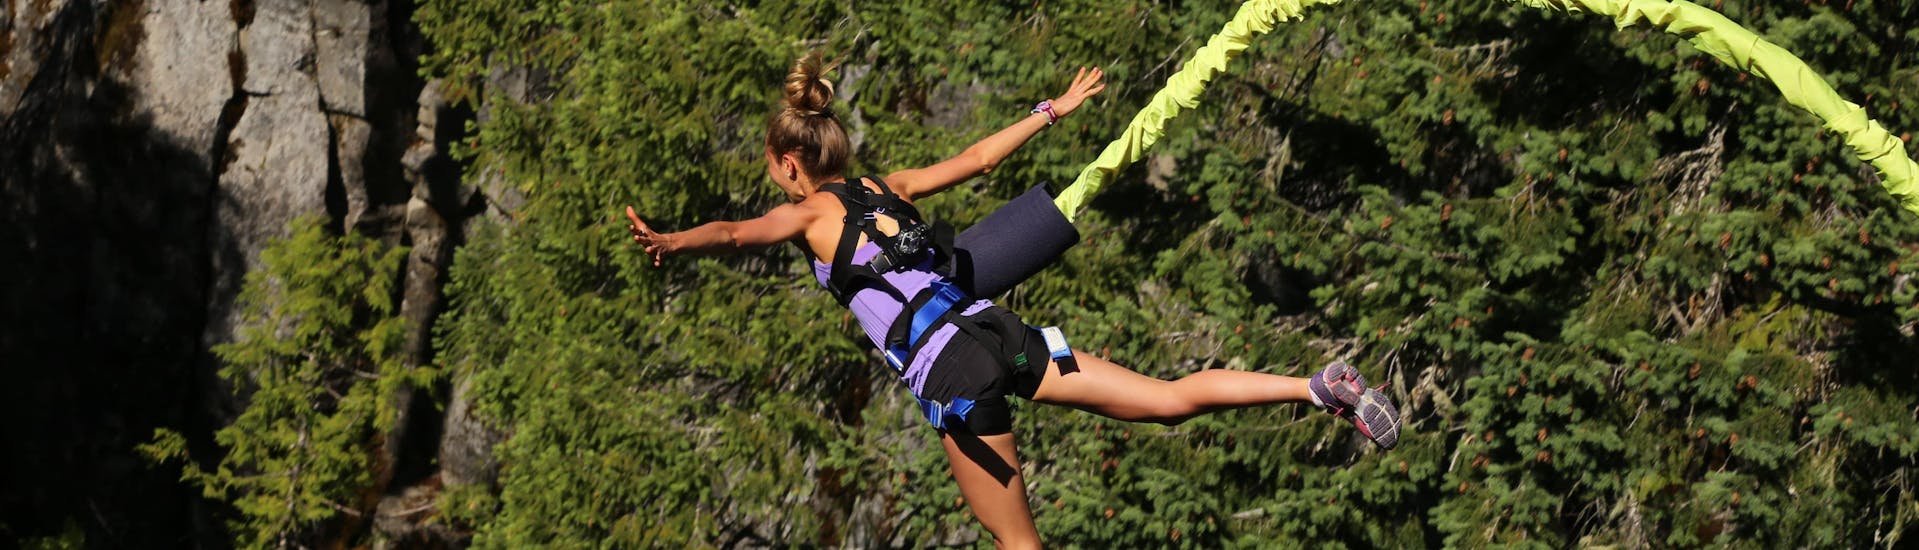 Una giovane donna salta con il bungee jumping presso Les Eyzies.